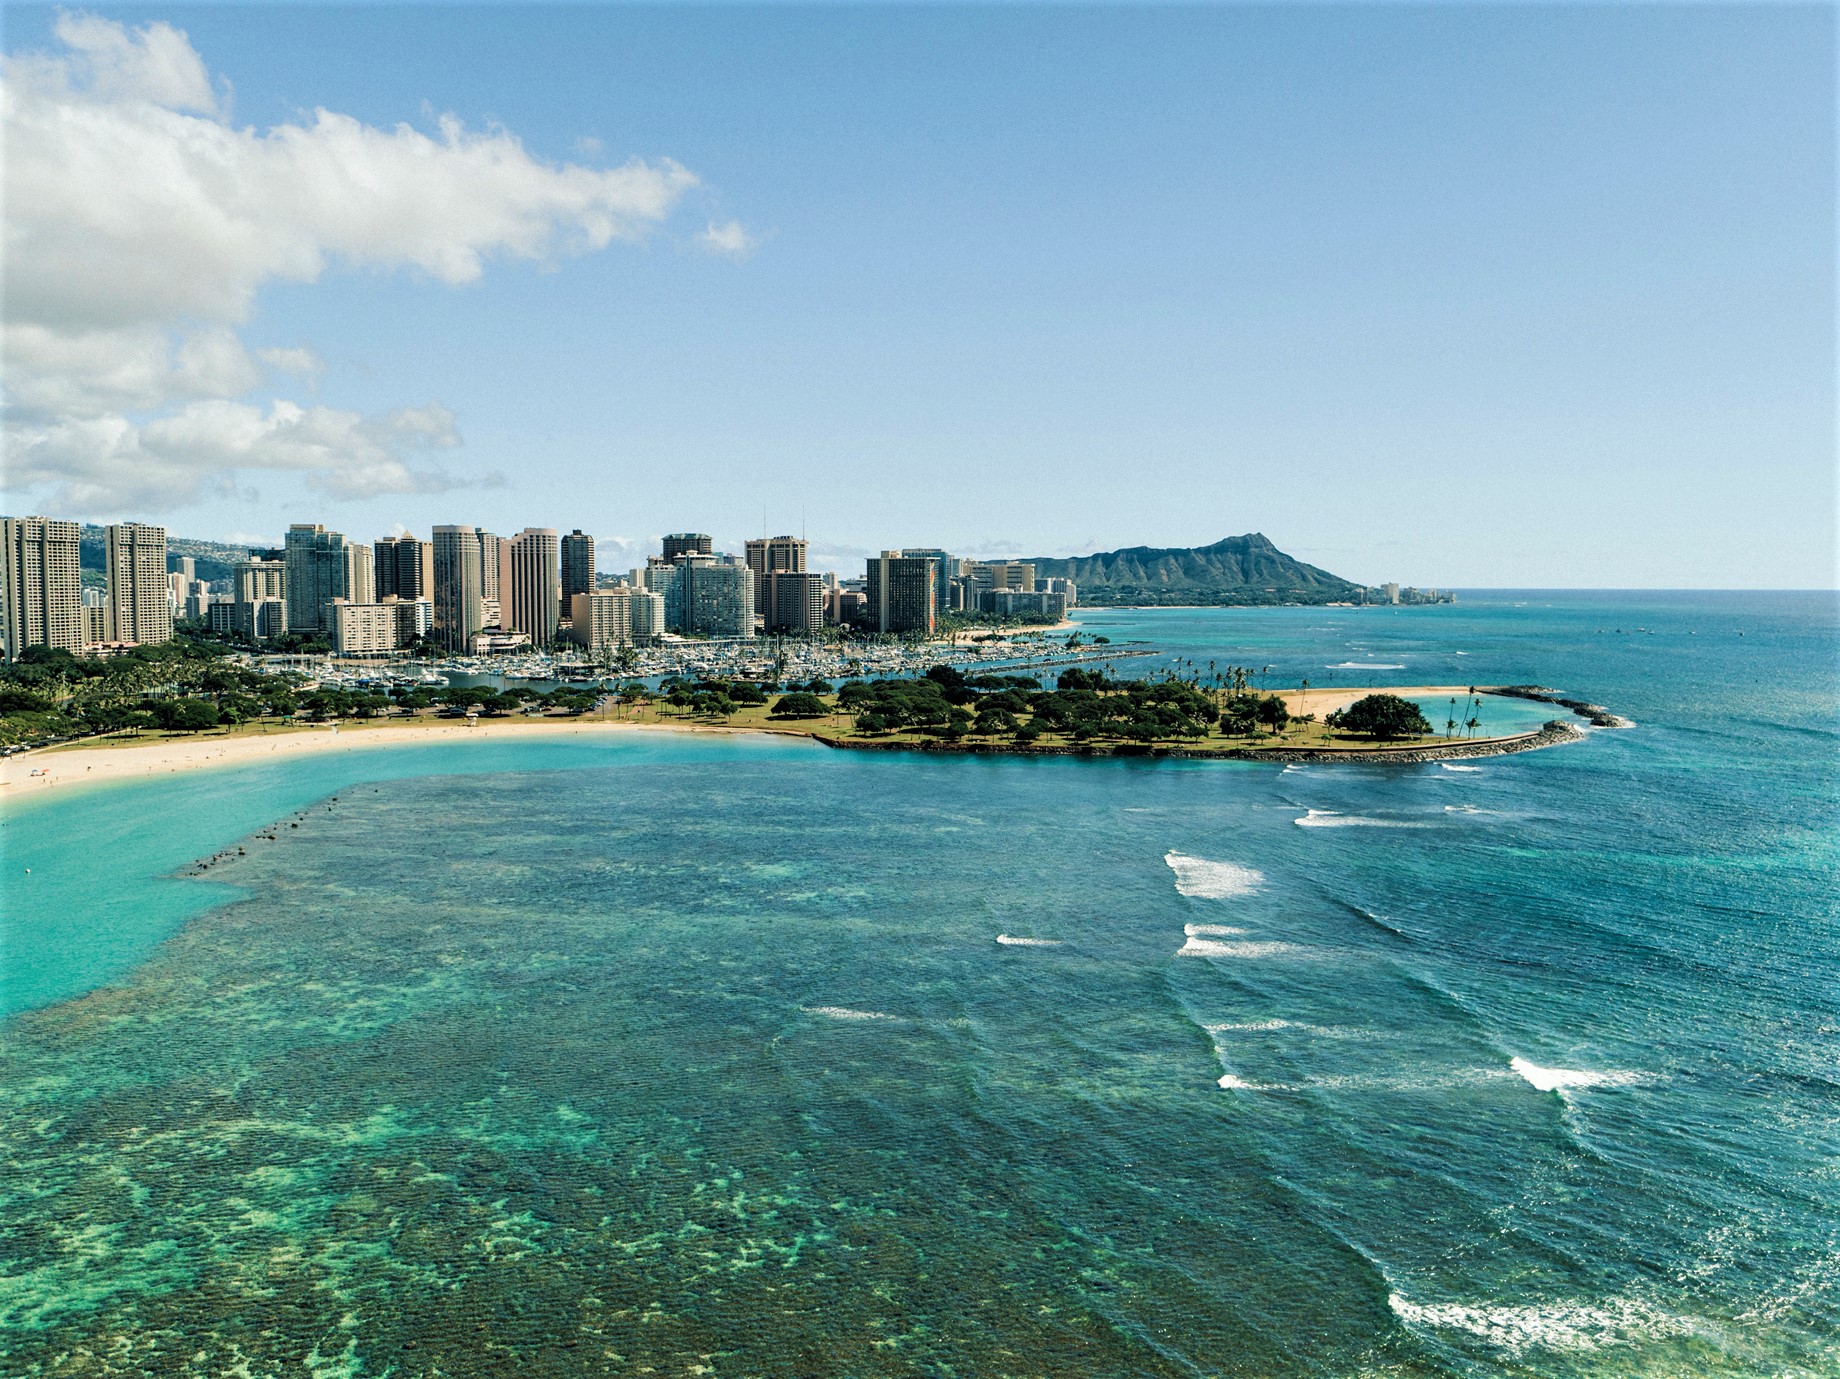 ハワイ州観光局 公式 マラマハワイ 地球にやさしい旅を Aloha Kakahiaka おはようございます 今日から2月ですね 今月もpc用のハワイの壁紙カレンダー3か月分を公開しました おうち時間や仕事時間をハワイ気分でお過ごしください